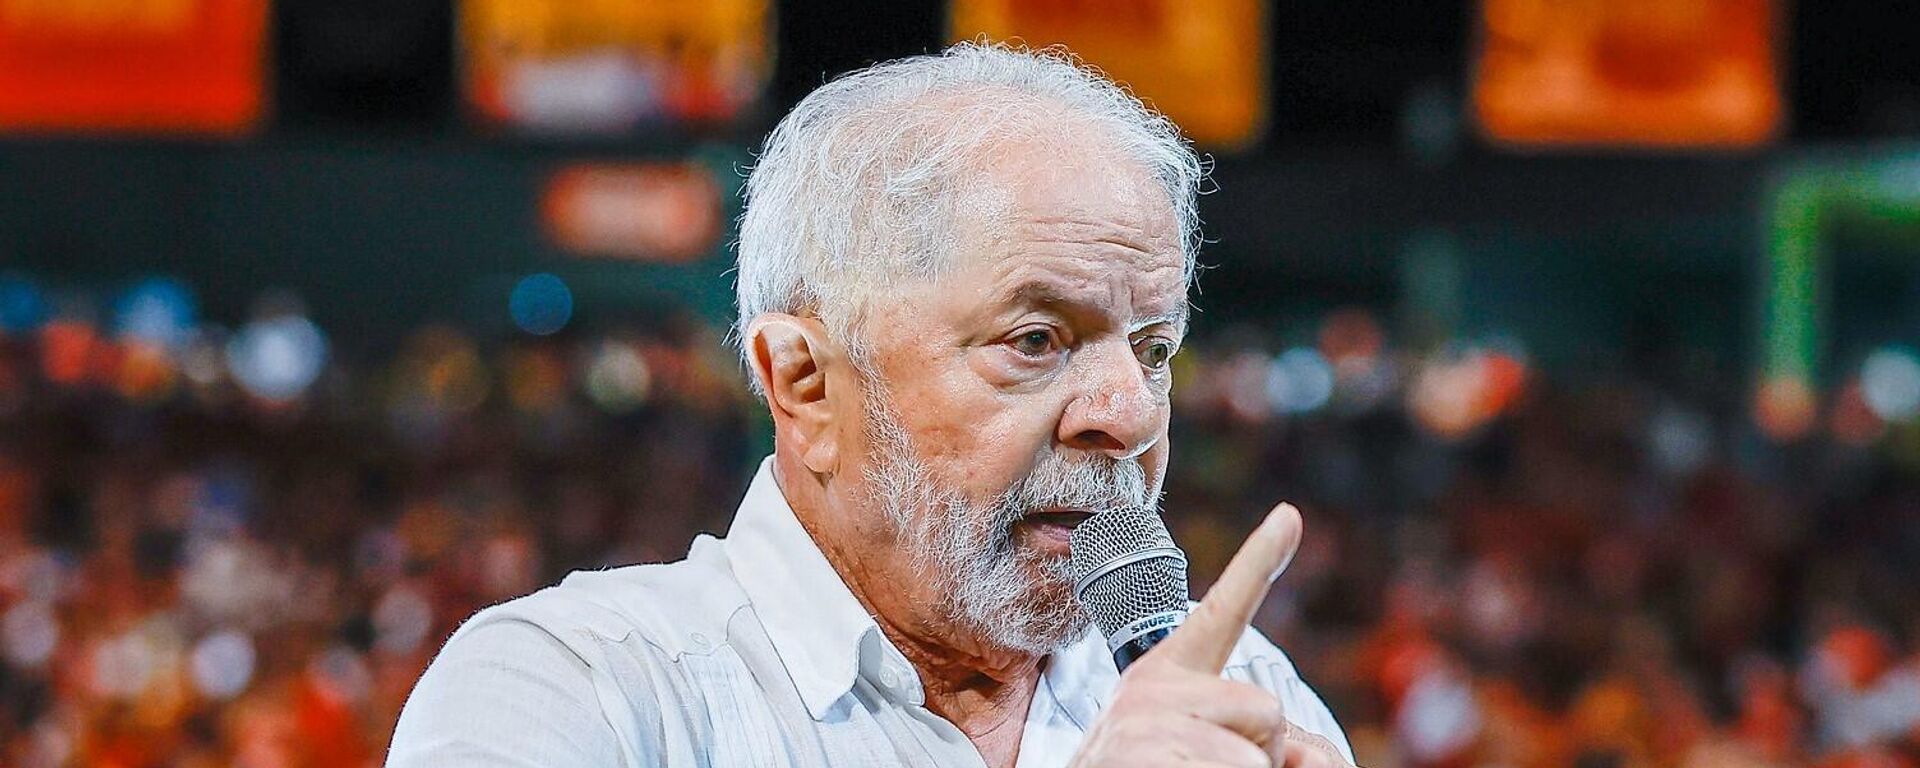 O ex-presidente Luiz Inácio Lula da Silva (PT) durante ato em Pernambuco - Sputnik Brasil, 1920, 27.10.2022